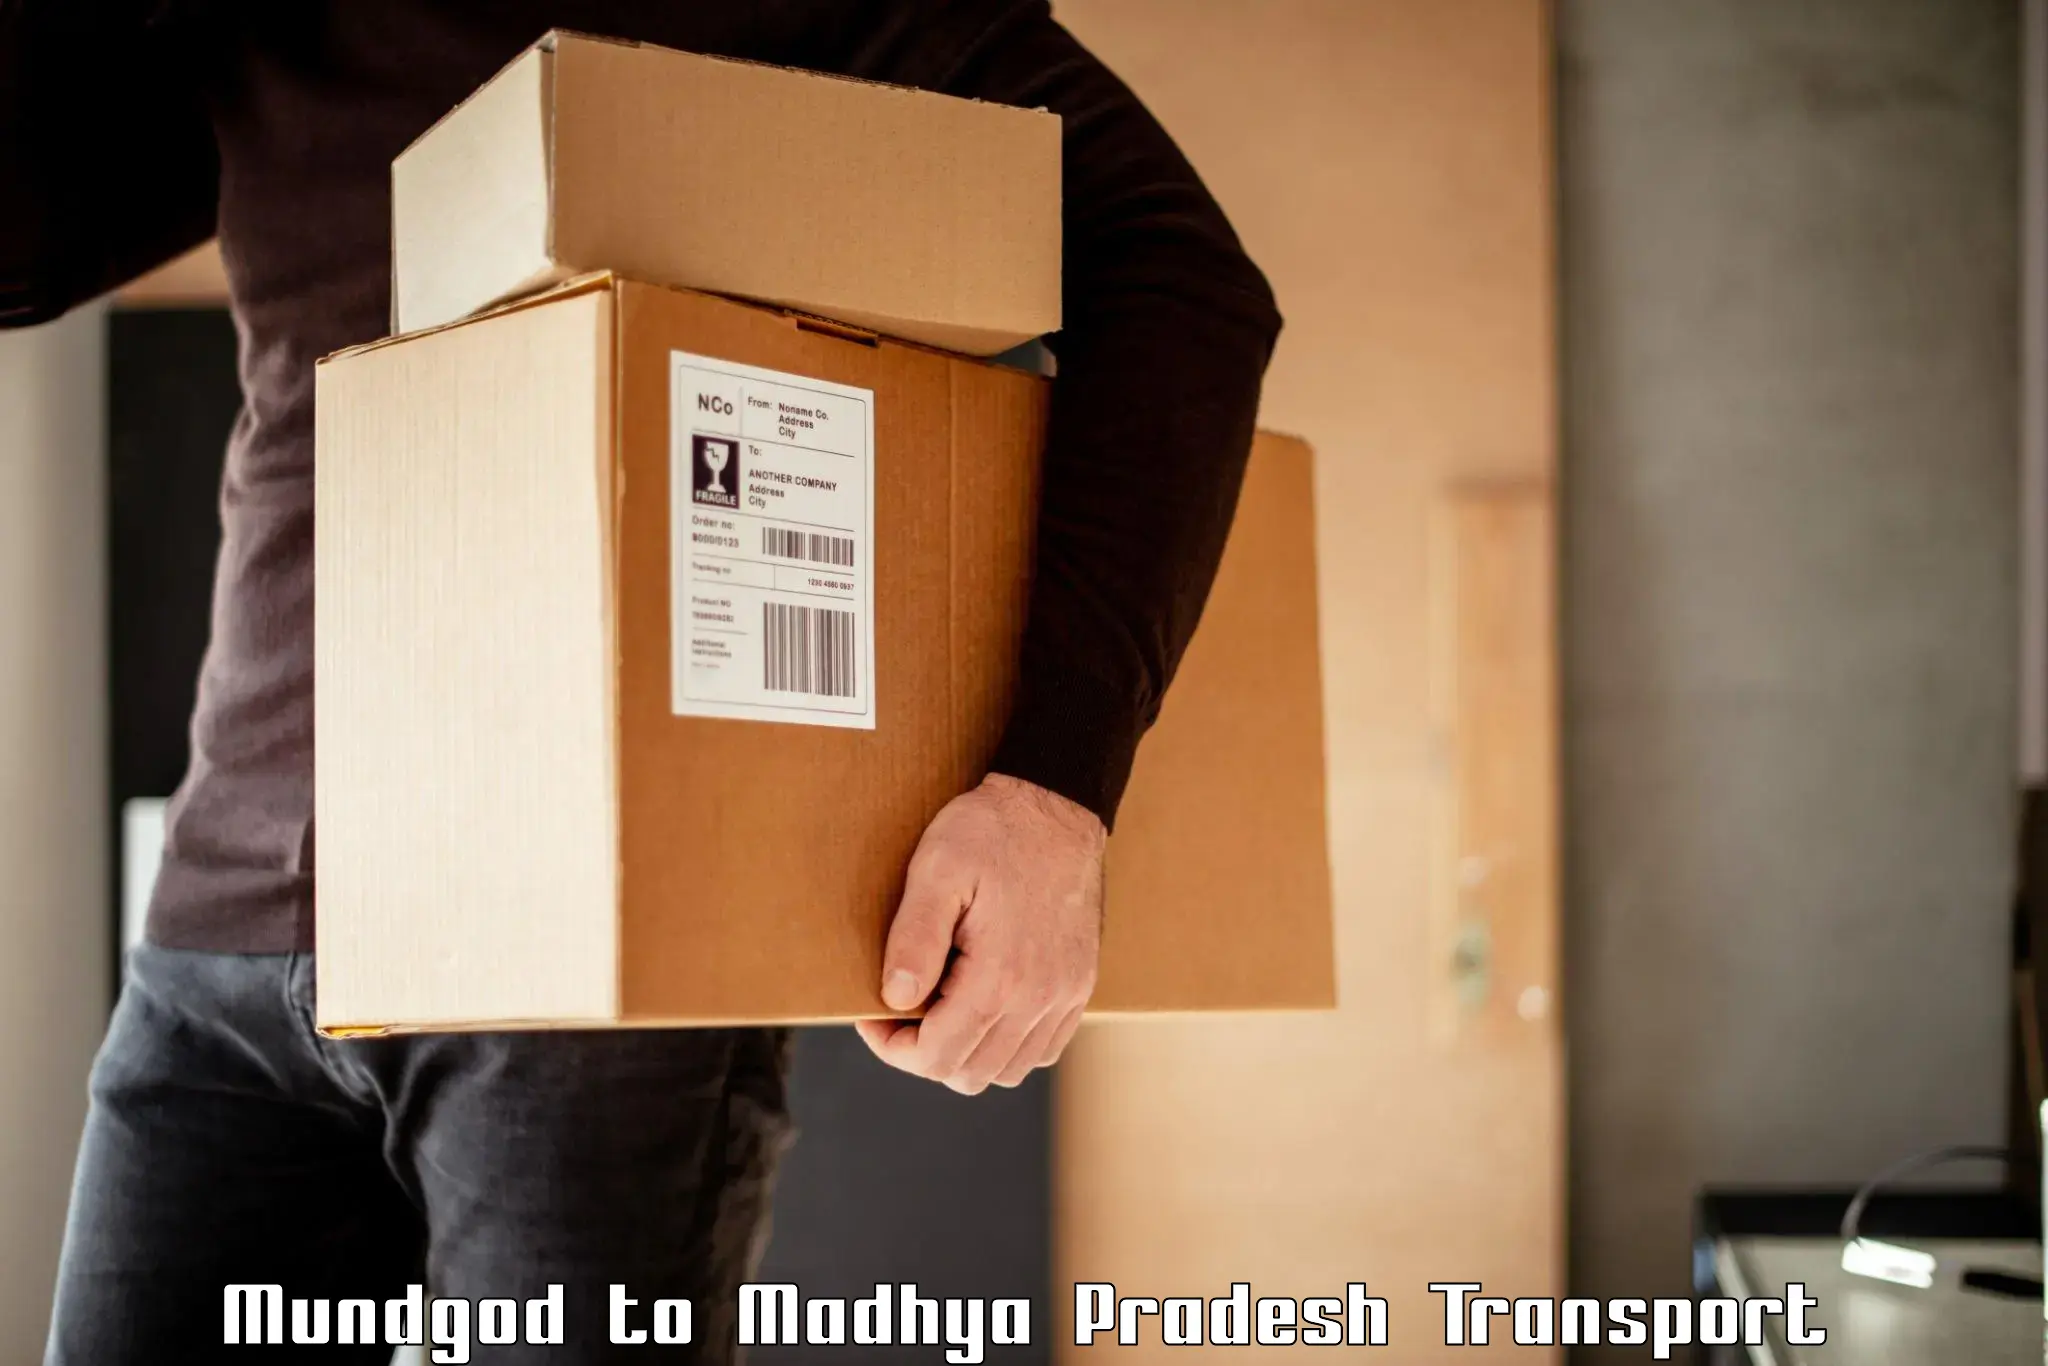 International cargo transportation services Mundgod to IIT Indore